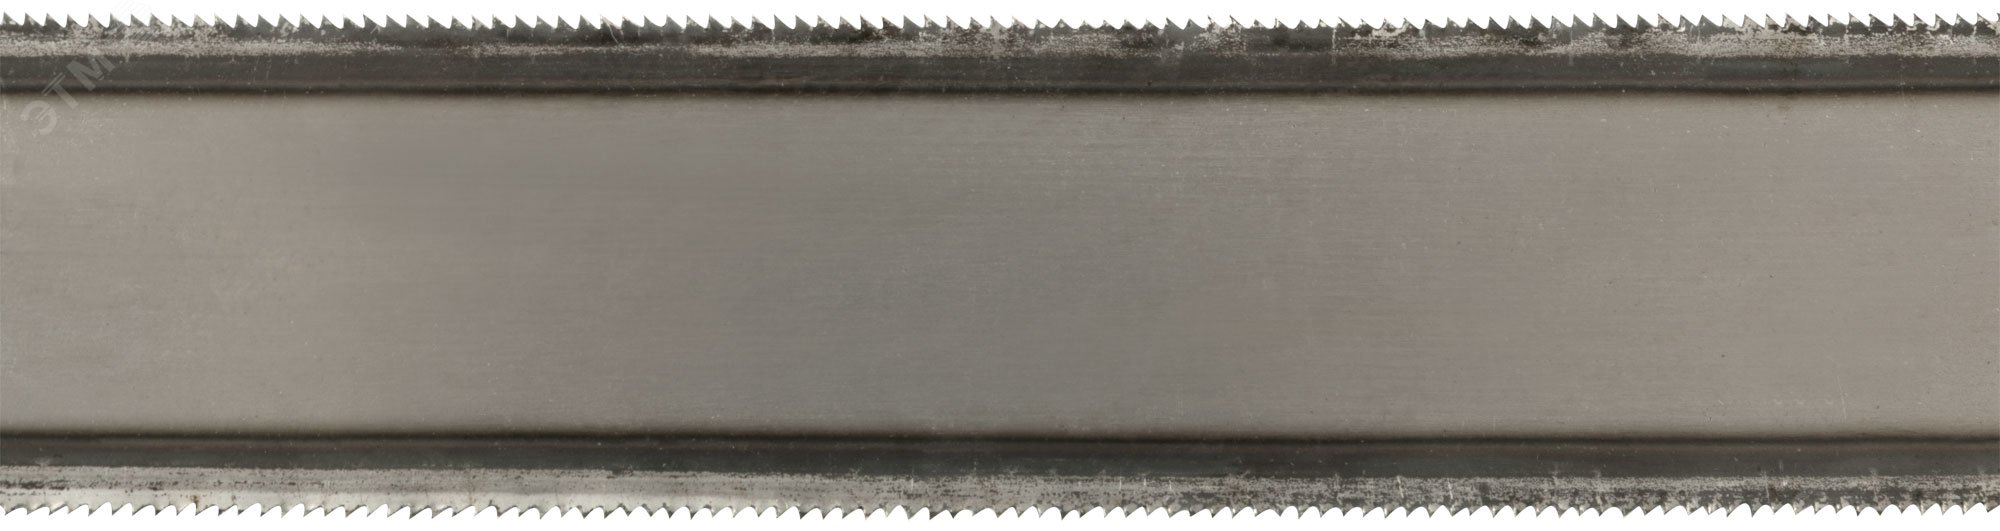 Полотно ножовочное по металлу 300 мм 2-х стороннее (ВИЗ) 40193 РОС - превью 5